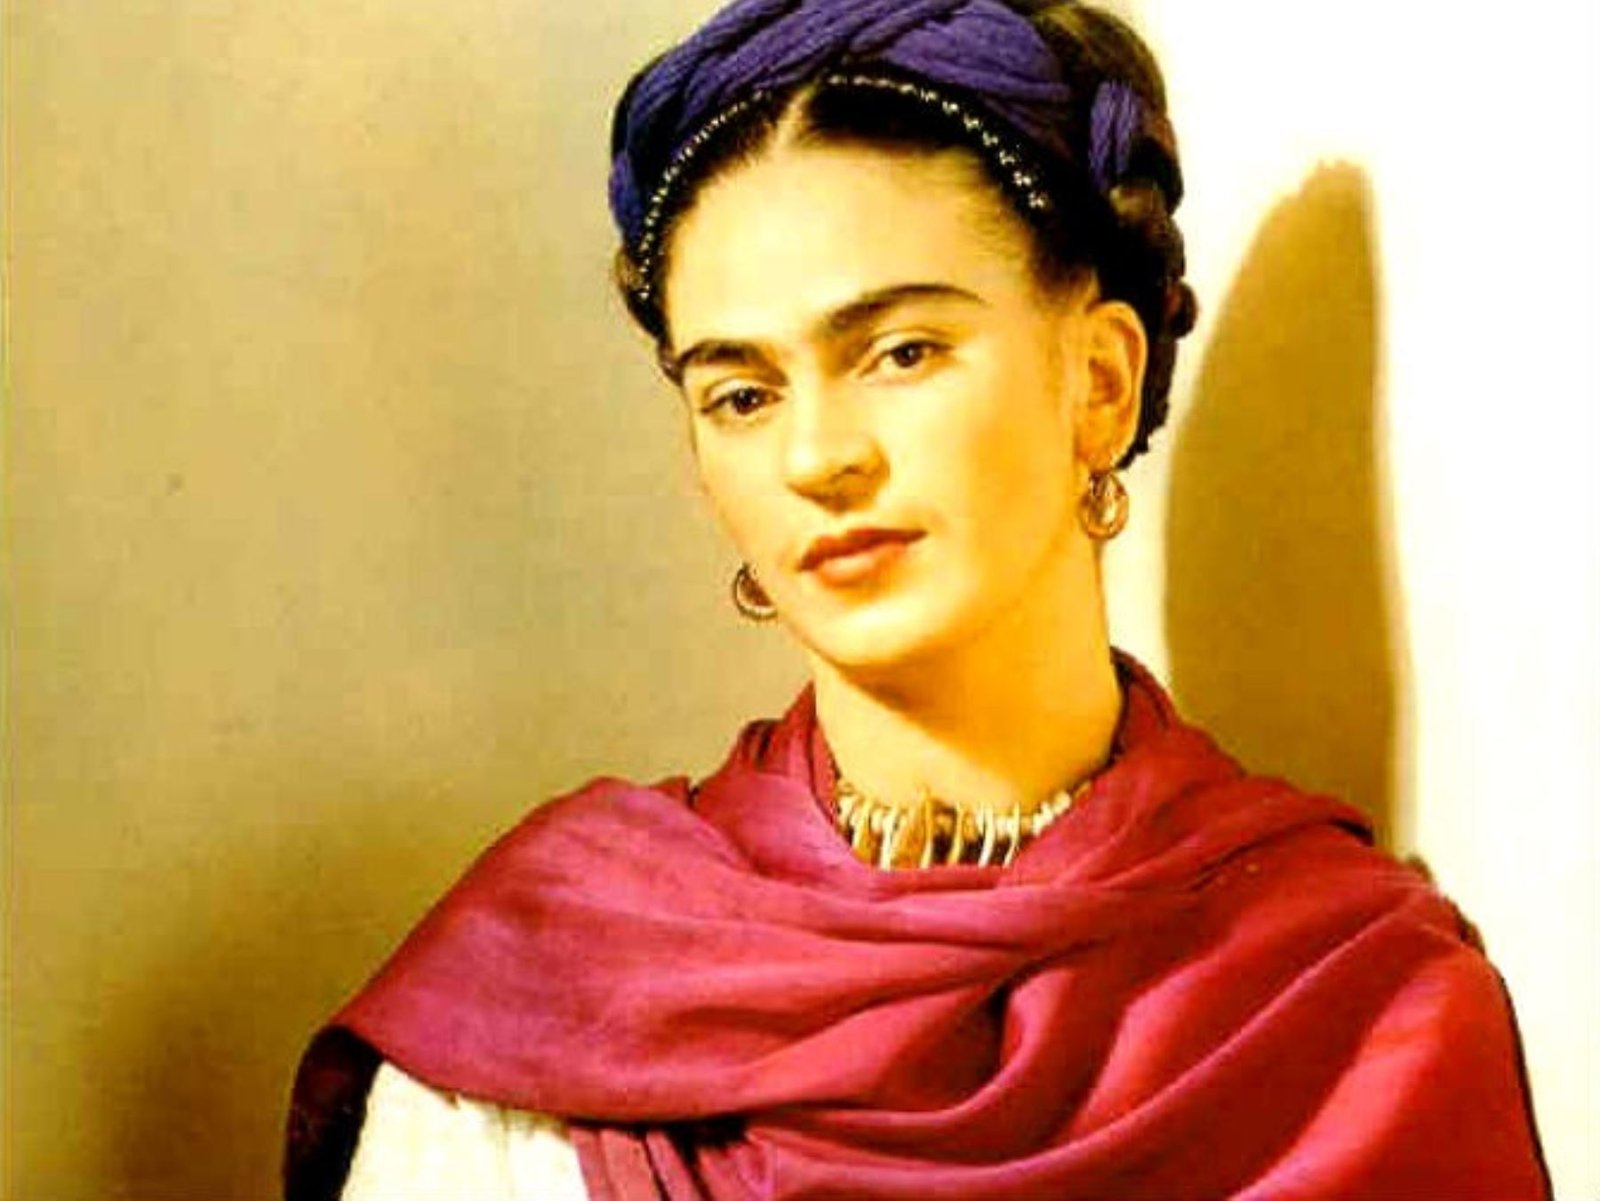 Recomendamos también: Por qué decimos que Frida Kahlo está sobrevalorada -  Etcétera